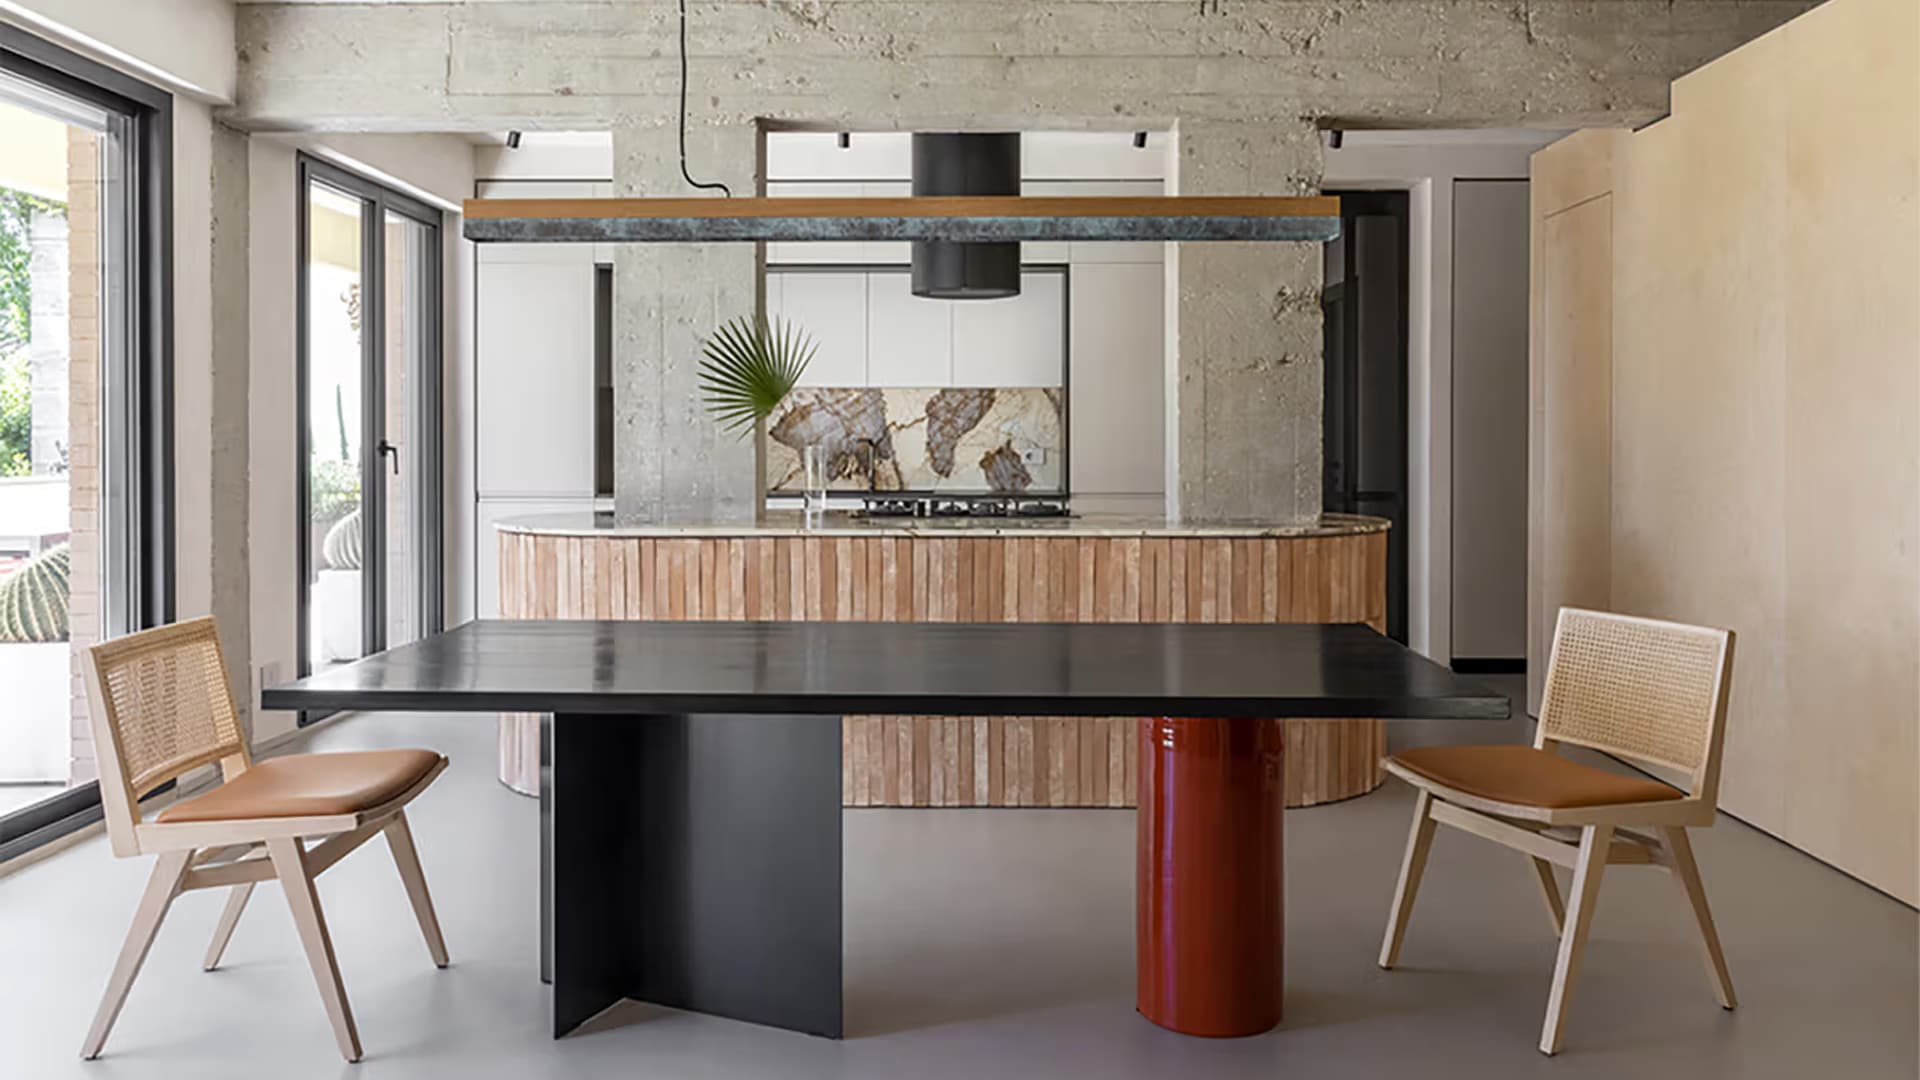 Необработанный бетон, яркая древесина и стальные детали в интерьере итальянской квартиры – проект STUDIOTAMAT